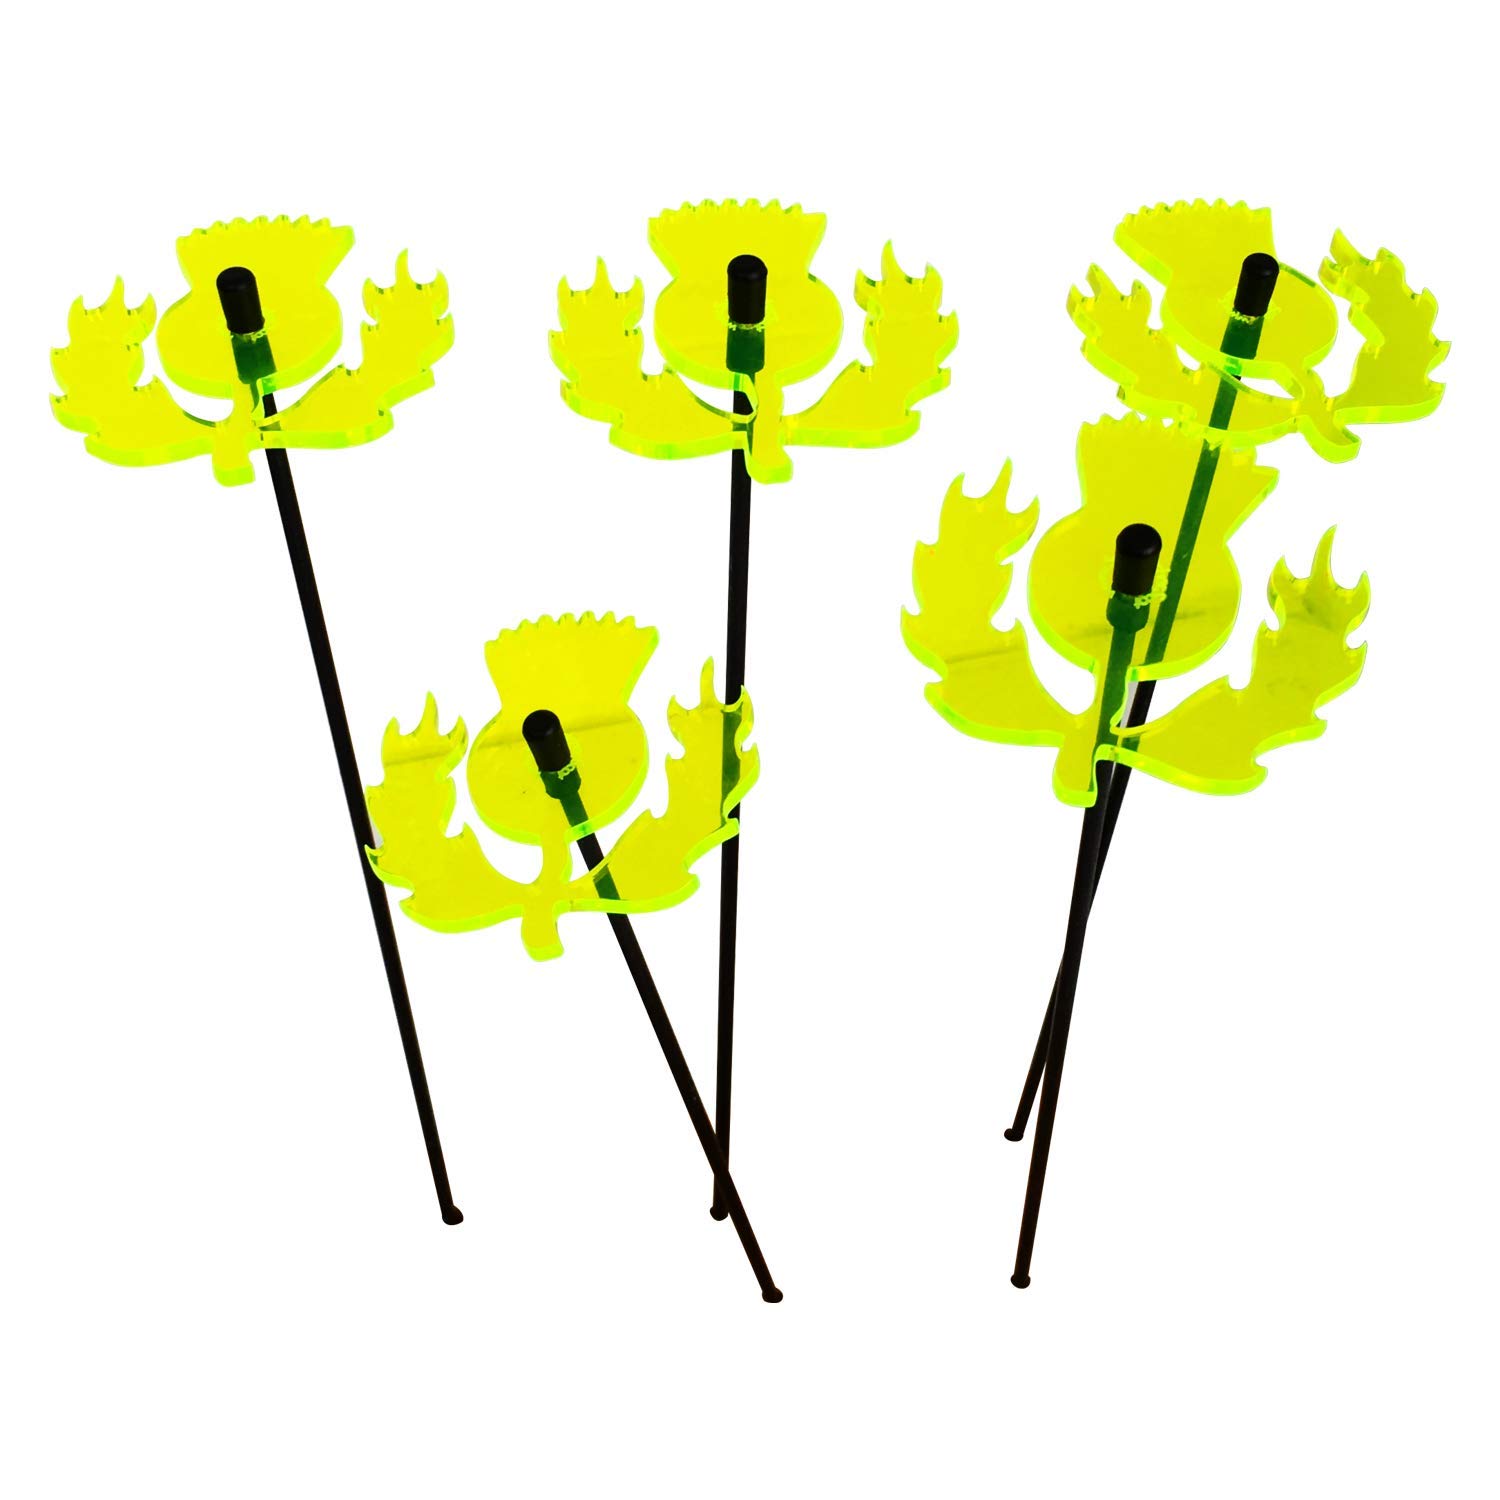 Gartendeko Stab Best Of 6cm ¸¸ Mit 25cm Stab Farbe Gelb Gartenstecker Geschenk